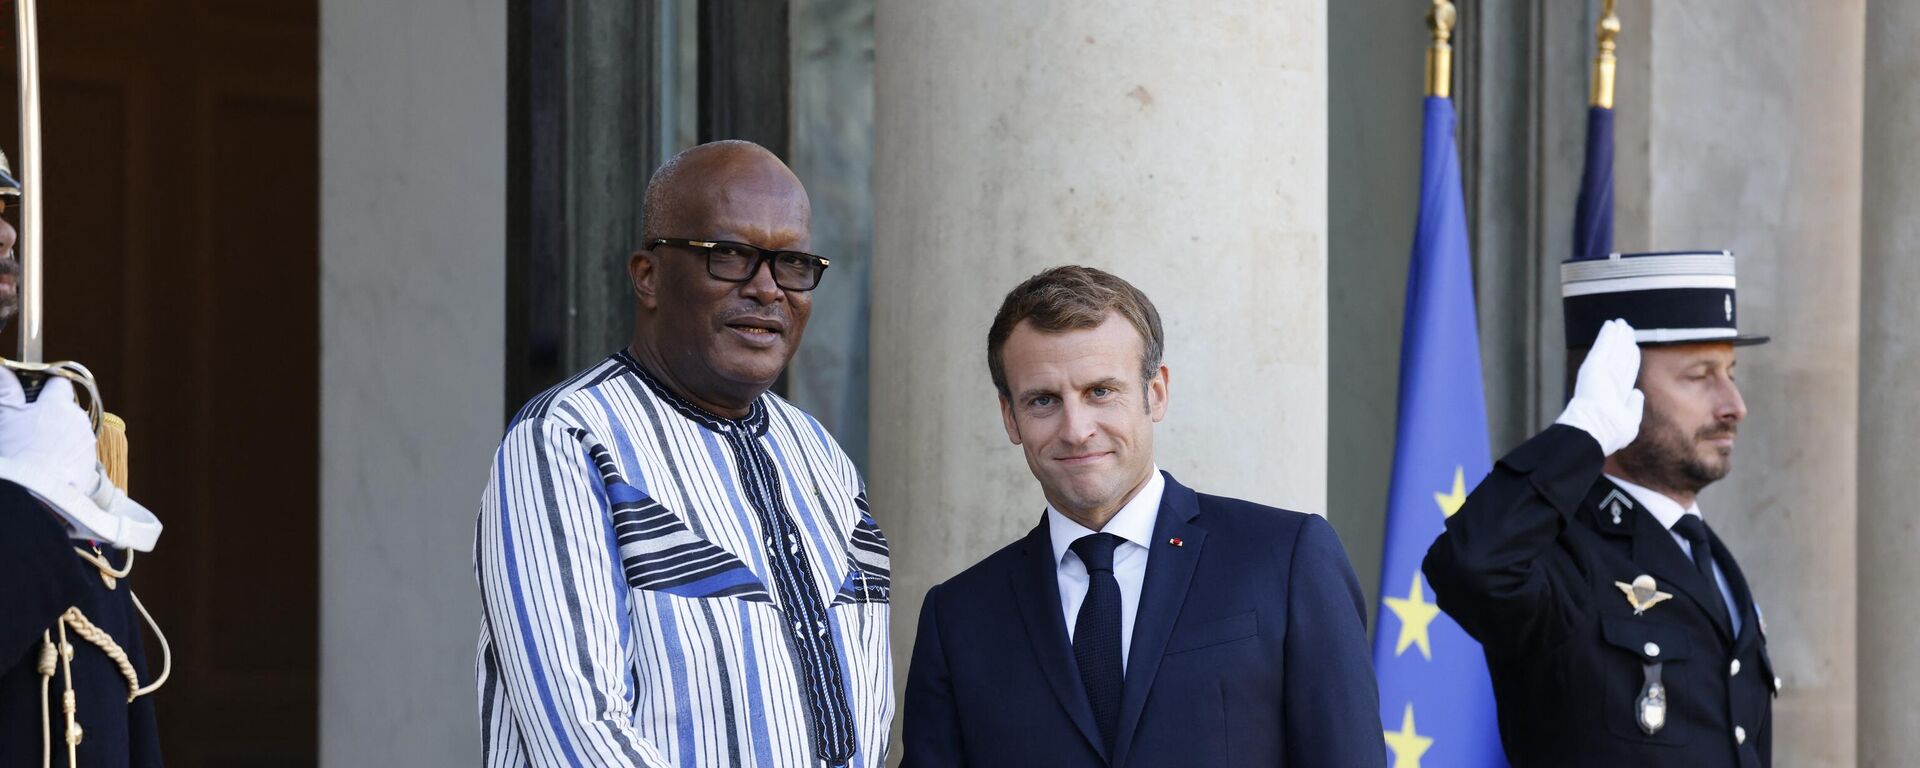 El presidente francés, Emmanuel Macron, con el expresidente de Burkina Faso, Marc Christian Kabore, durante una reunión en París en noviembre de 2021 - Sputnik Mundo, 1920, 23.01.2023